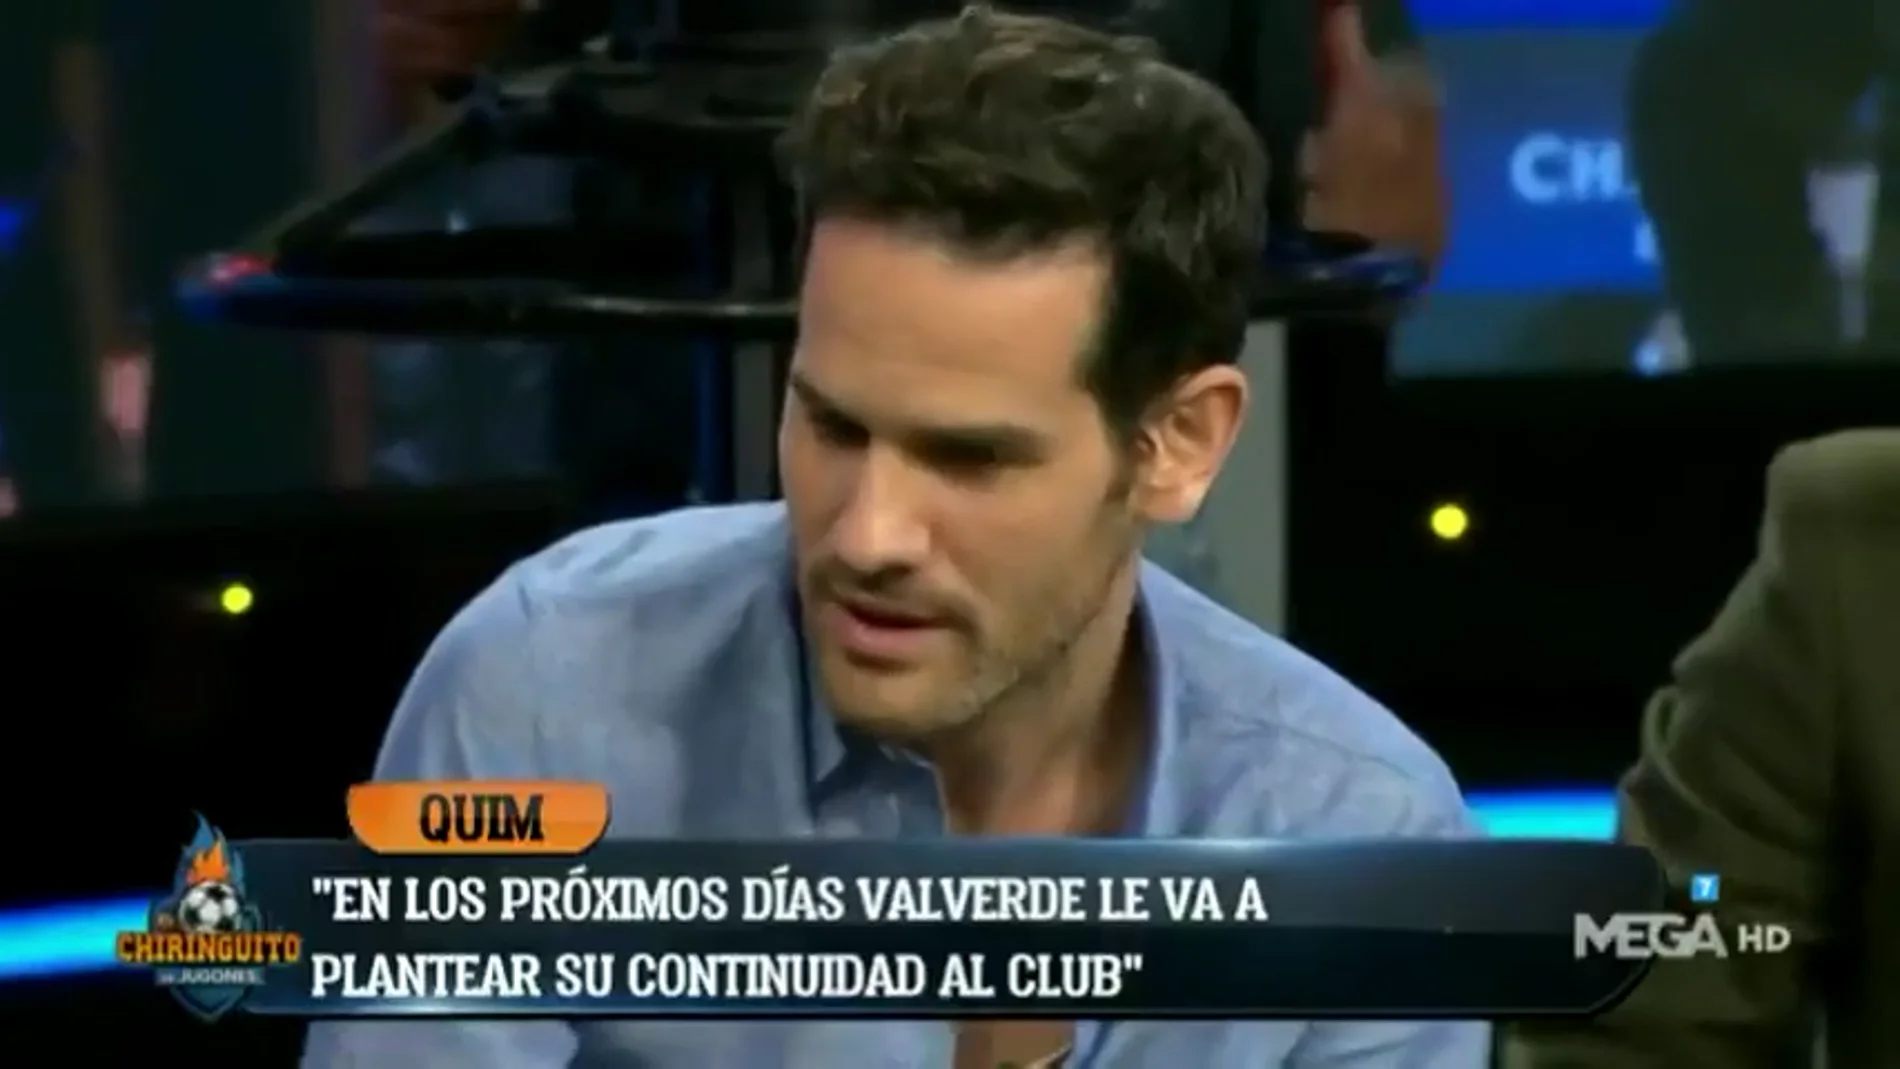 Quim Domènech: "Valverde planteará en los próximos días su continuidad al club"